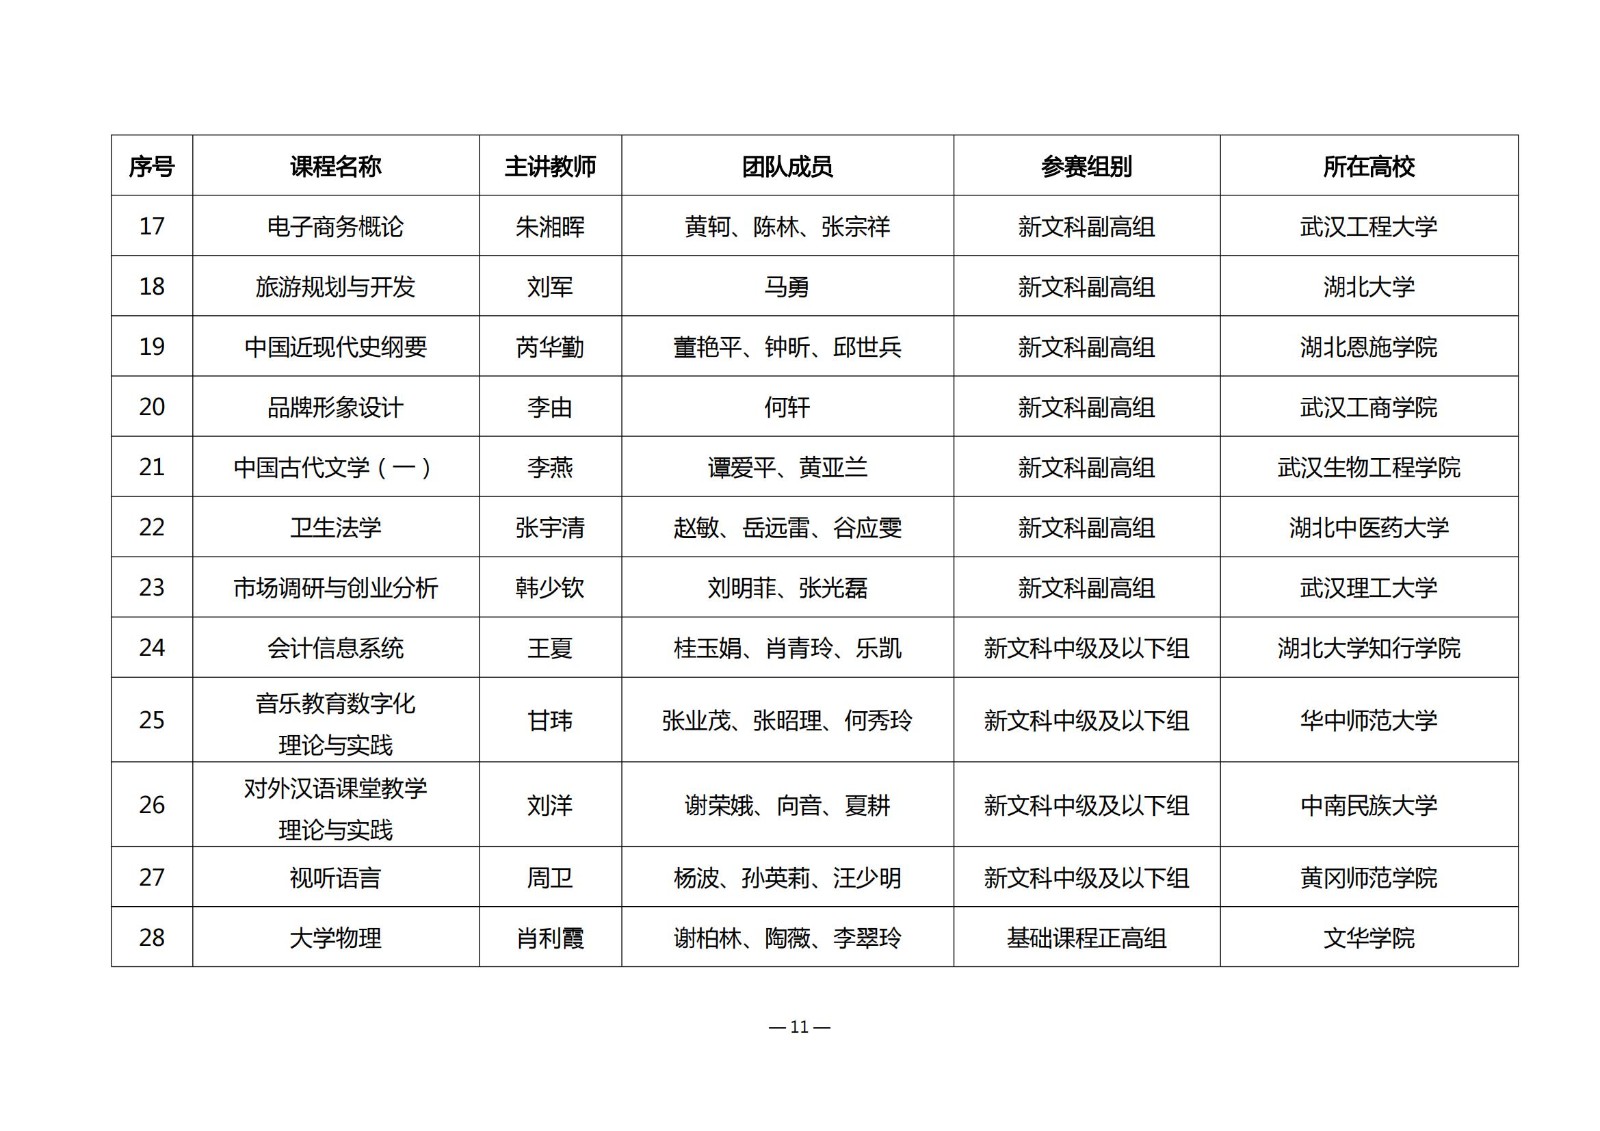 第四届湖北省高校教师教学创新大赛评审结果公示_10.jpg